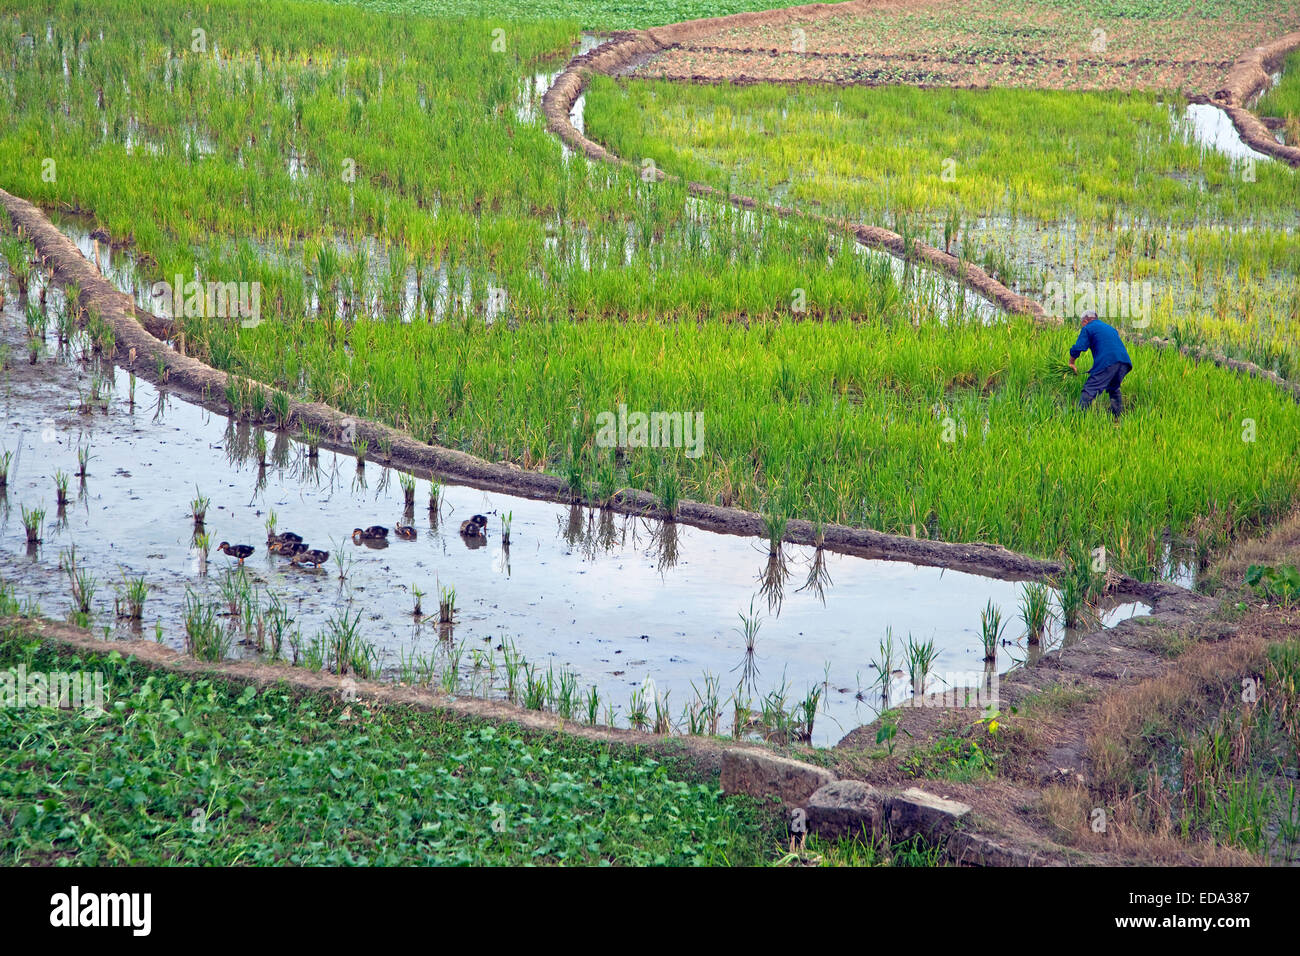 Coupe homme tibétain les plants de riz en rizière dans les basses terres de la province du Sichuan, Chine Banque D'Images